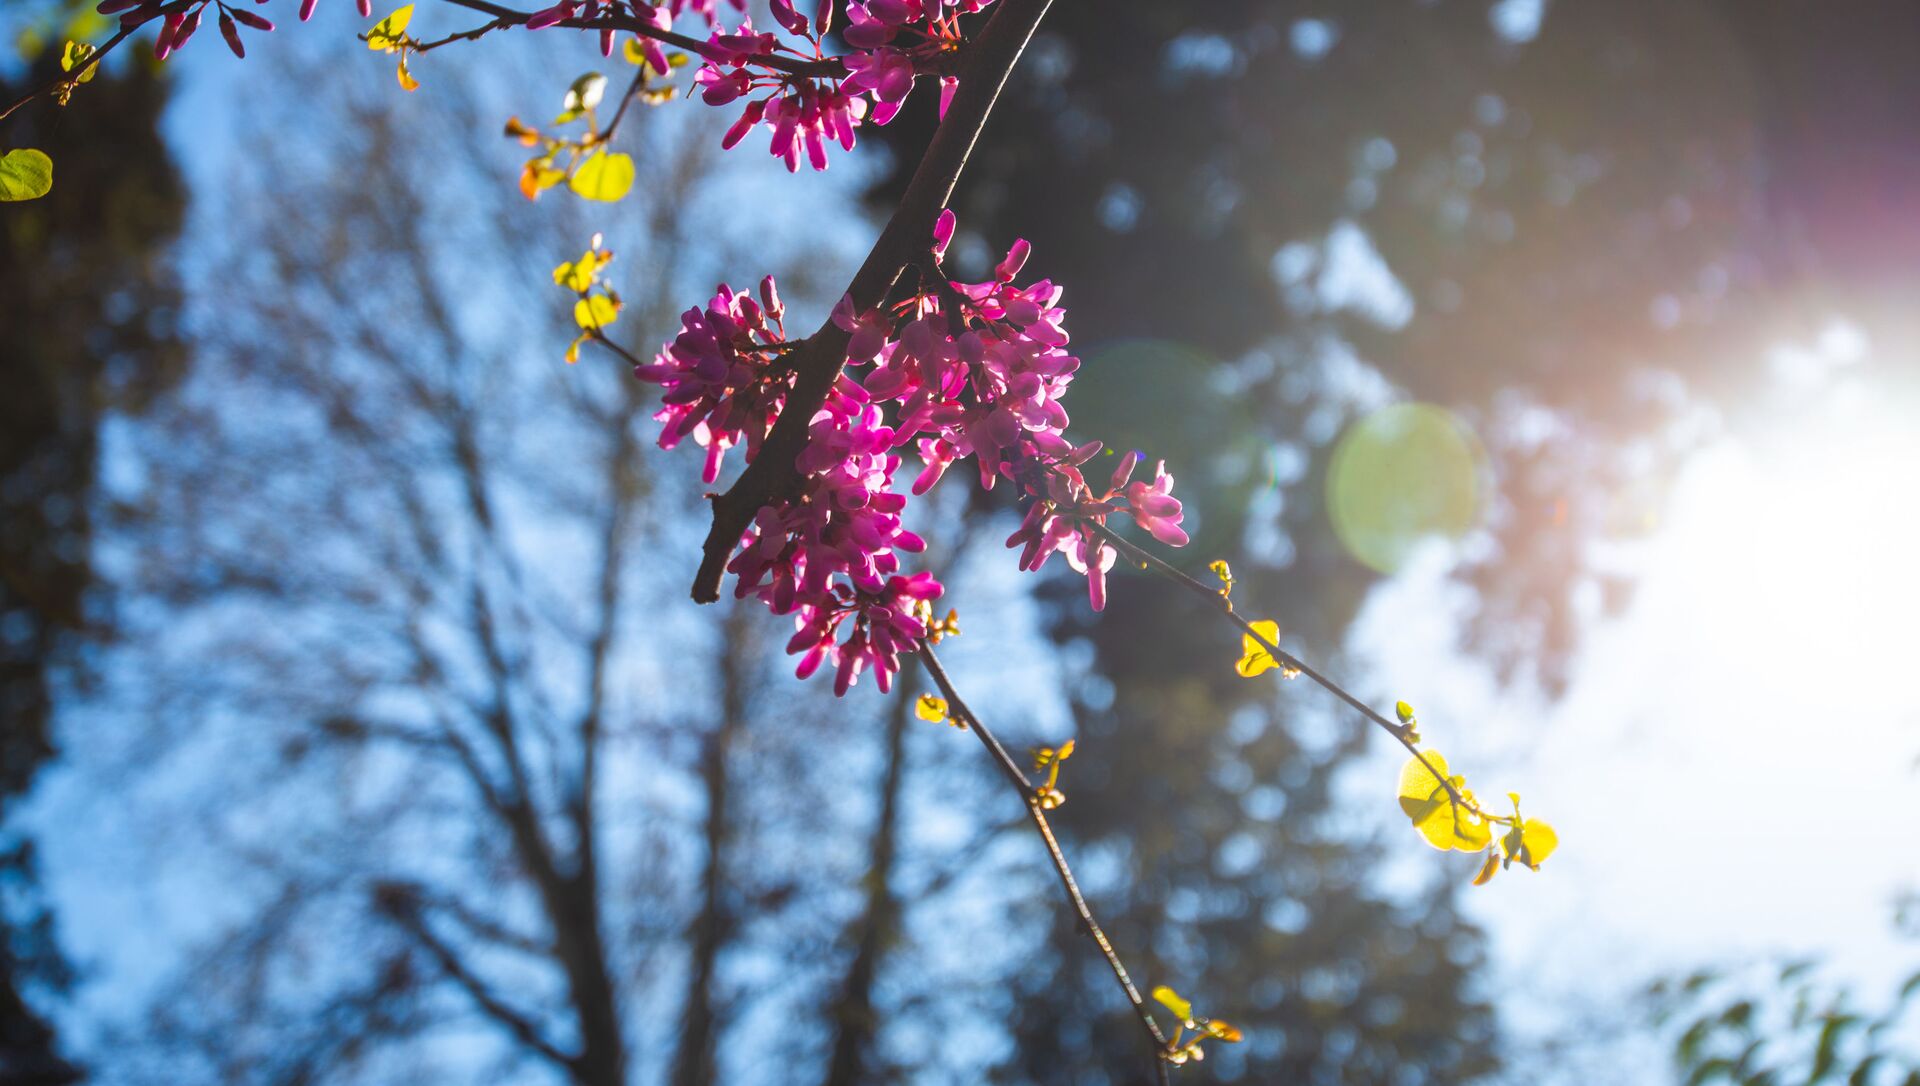 Карантинная весна в столице Грузии. Расцветающие деревья в парке Рике - Sputnik Грузия, 1920, 28.02.2021